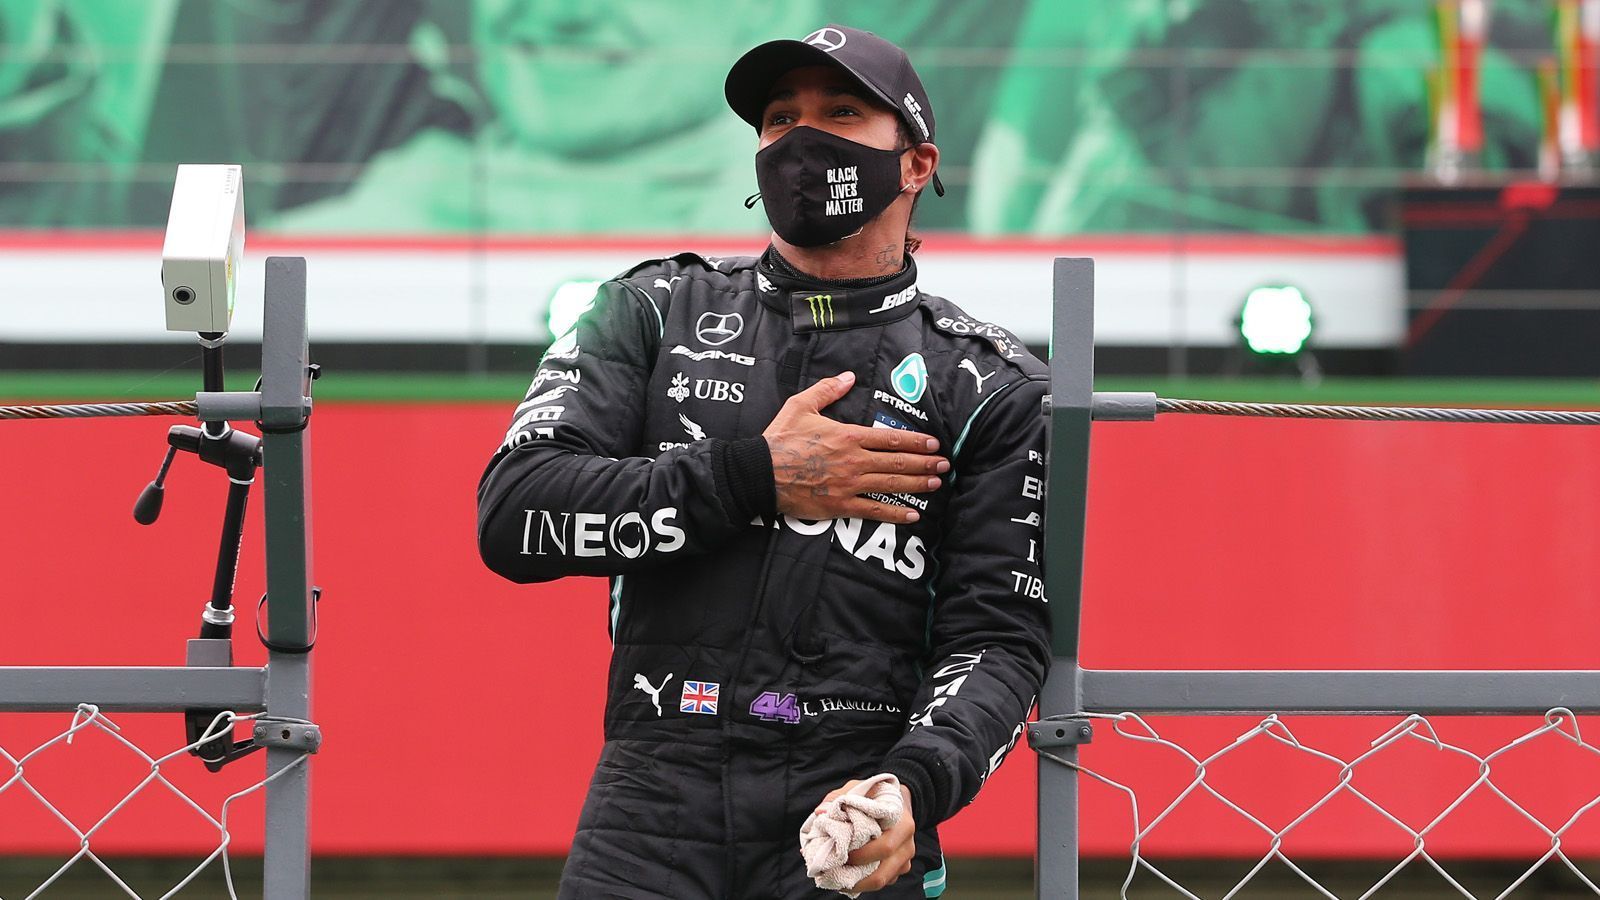 
                <strong>92. Sieg! Hamilton knackt Schumi-Rekord</strong><br>
                345 Rennen lang hielt Michael Schumachers Rekord von 91 Grand-Prix-Siegen in der Formel 1. Am 25. Oktober 2020 knackte Lewis Hamilton die ewige Bestmarke. In Portimao/Portugal holte sich der Brite im Mercedes seinen 92. Erfolg bei einem Formel-1-Rennen. Und wie! Die letzten 46 Runden führte Hamilton den Großen Preis souverän an, hat am Ende 25 Sekunden Vorsprung vor seinem Teamkollegen Valtteri Bottas. Der nächste Rekord ist längst zum Greifen nah. Noch fünf Rennen - dann wird sich der 35-Jährige wohl seinen siebten WM-Titel schnappen und mit Schumi gleichziehen. 
              